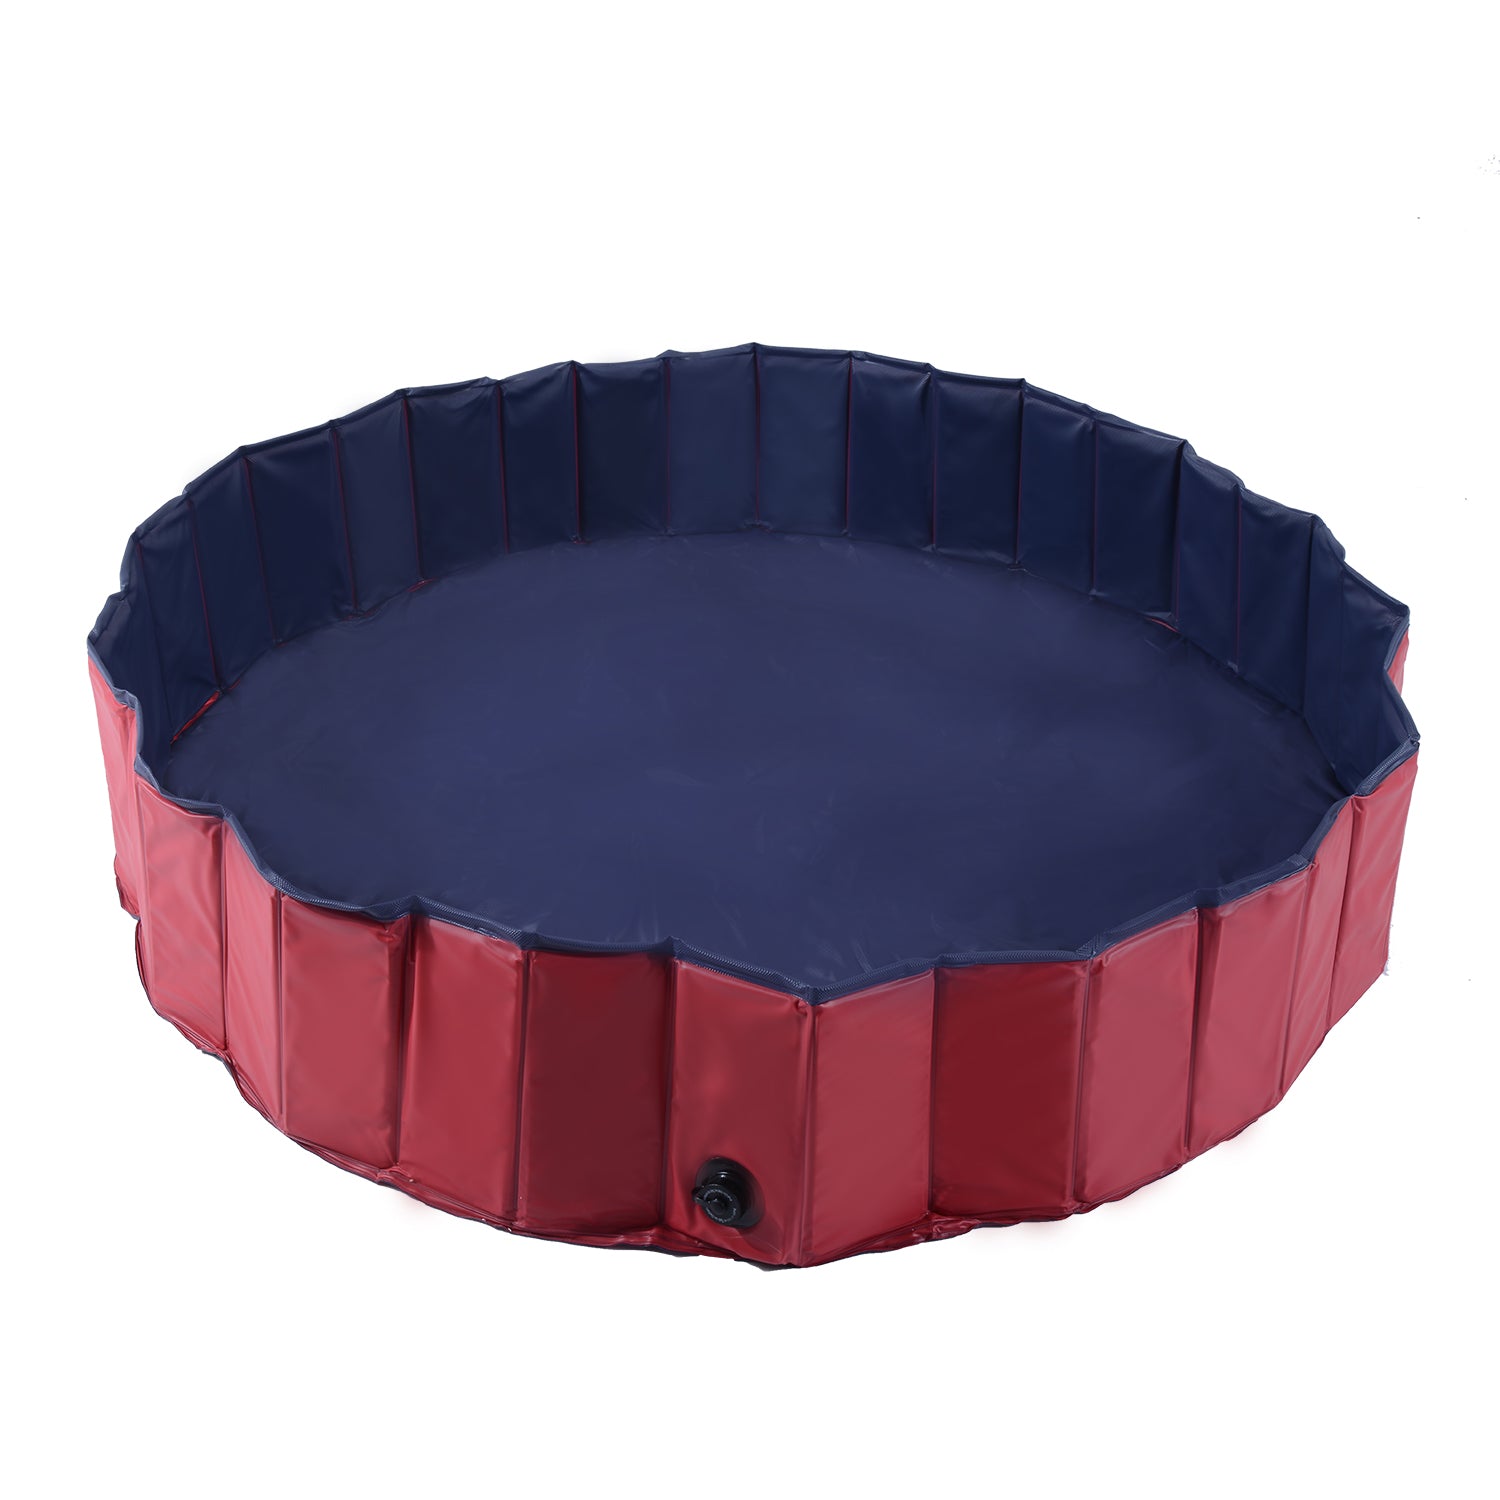 Φ160 x 30H cm Pet Swimming Pool - Red/Dark Blue PVC